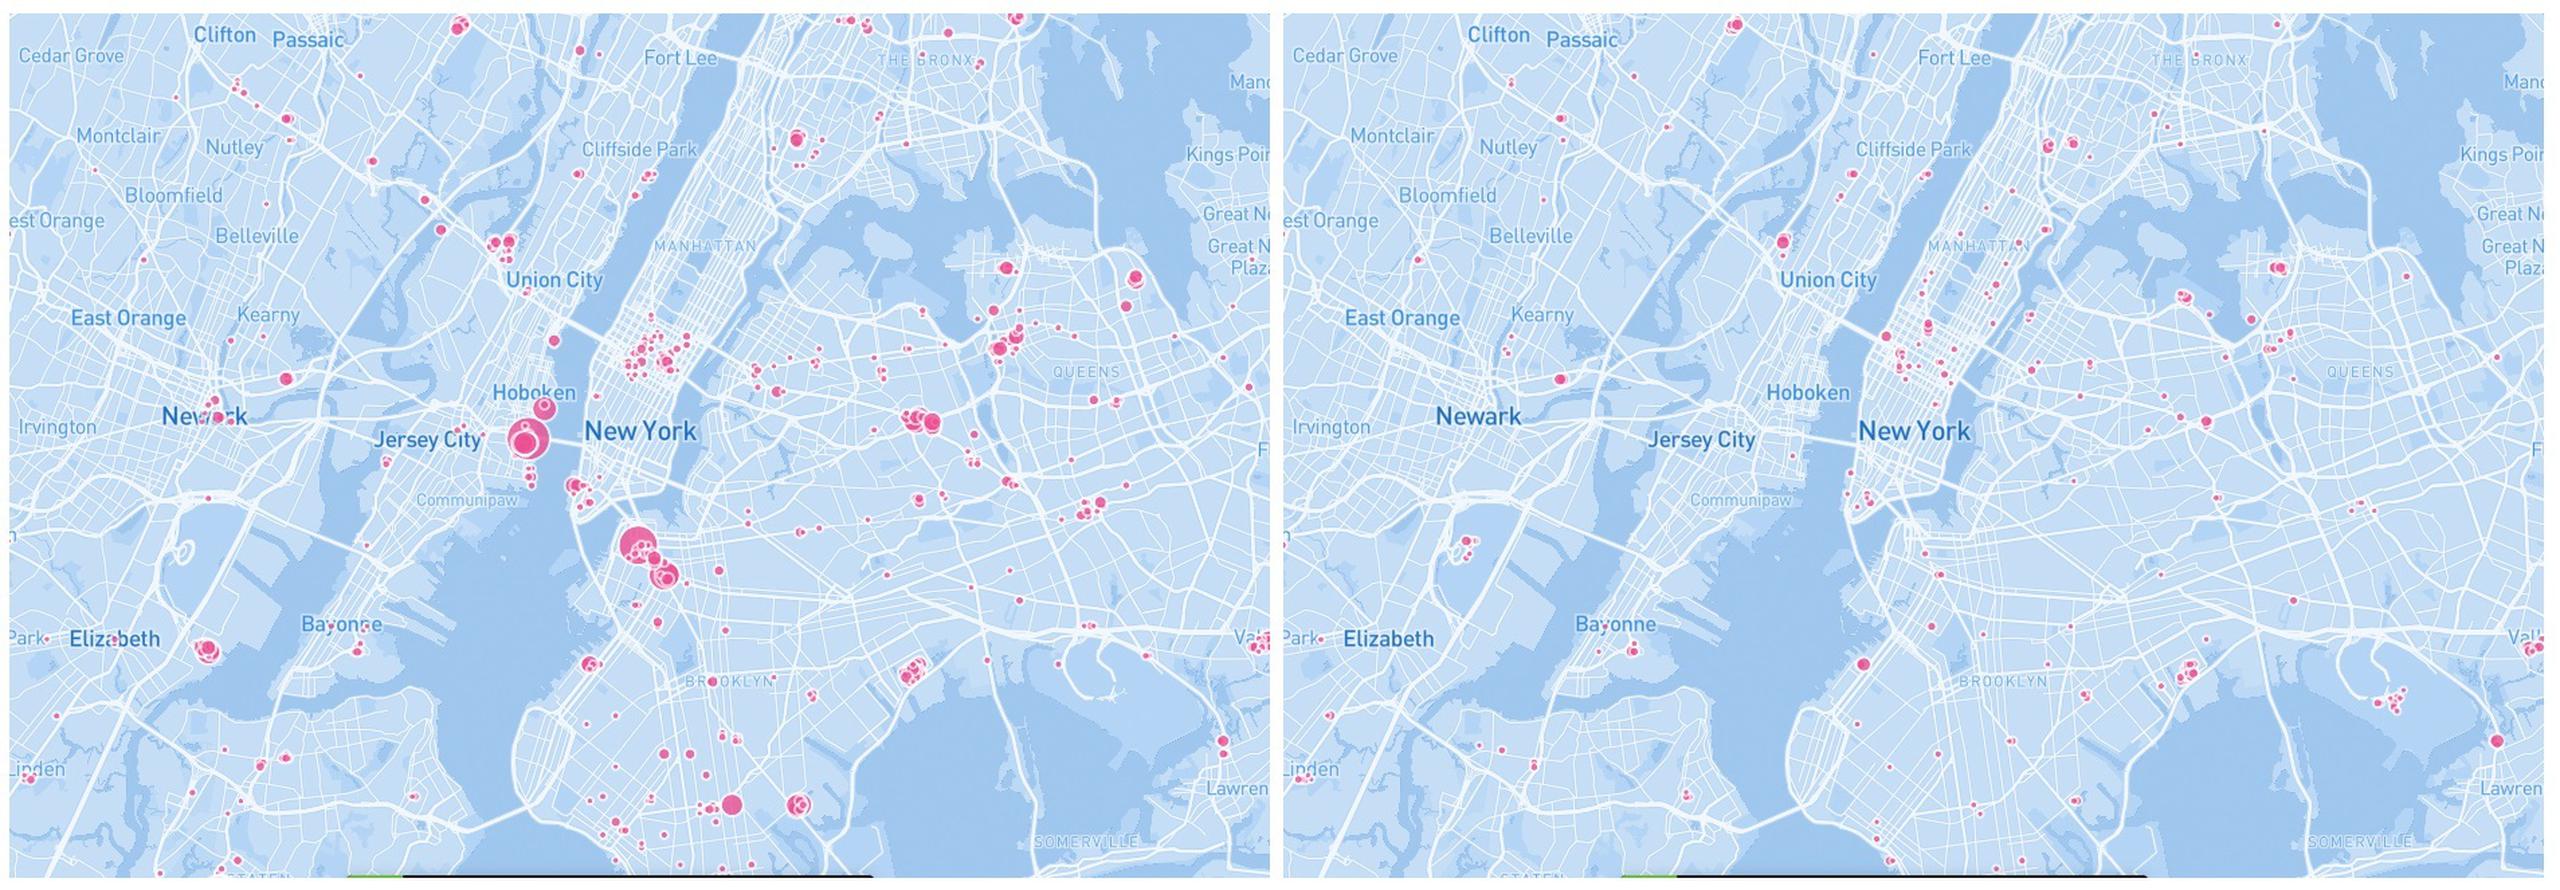 Combo de mapas tomado de Google Maps que muestran los puntos de aglomeraciones con más de 500 personas para la ciudad de Nueva York el 15 de enero de 2020 (i) y el 22 de abril de 2020 (d).